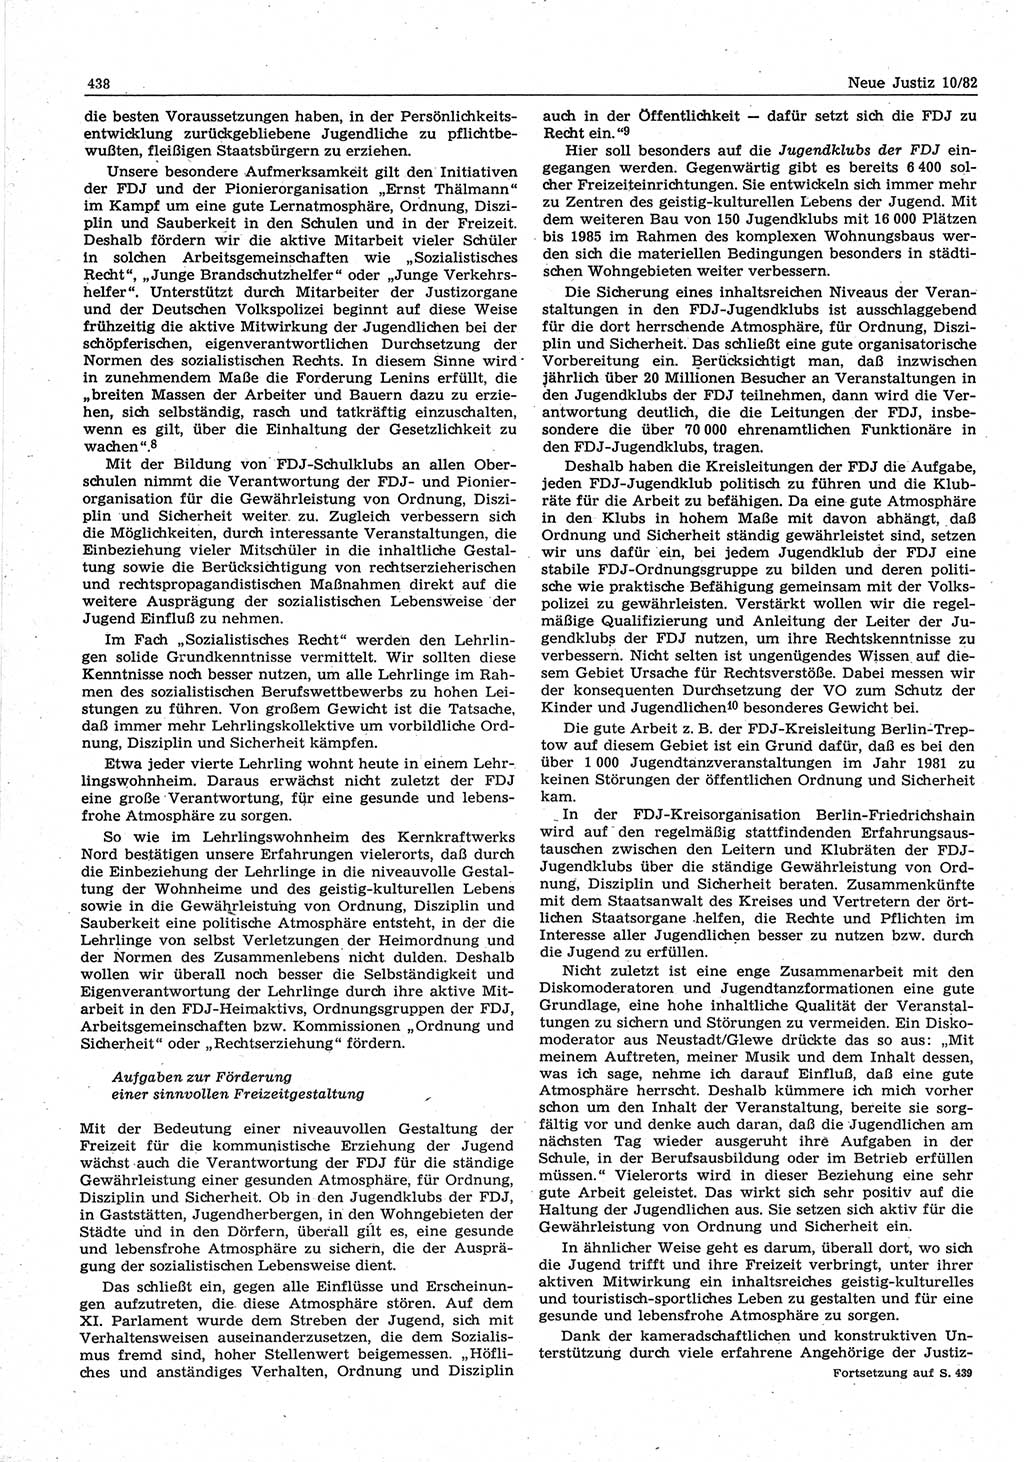 Neue Justiz (NJ), Zeitschrift für sozialistisches Recht und Gesetzlichkeit [Deutsche Demokratische Republik (DDR)], 36. Jahrgang 1982, Seite 438 (NJ DDR 1982, S. 438)